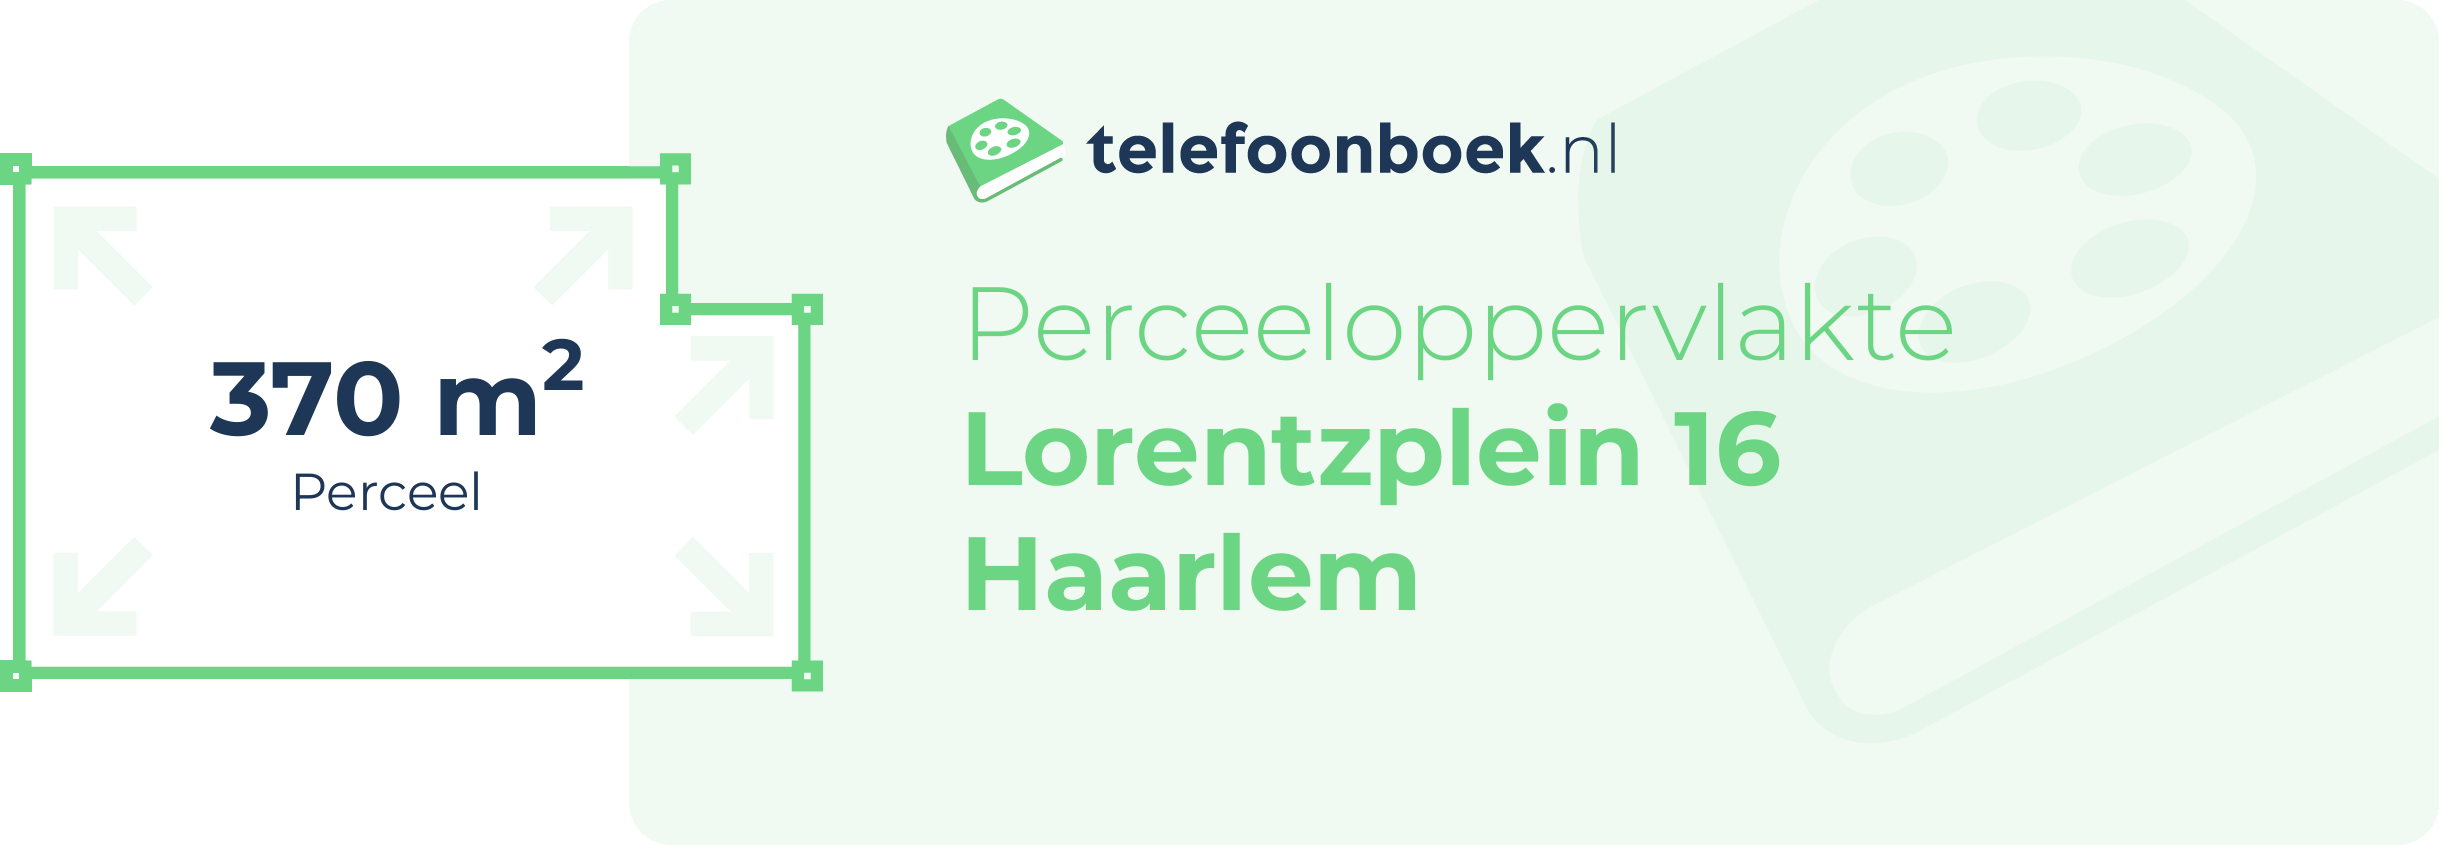 Perceeloppervlakte Lorentzplein 16 Haarlem